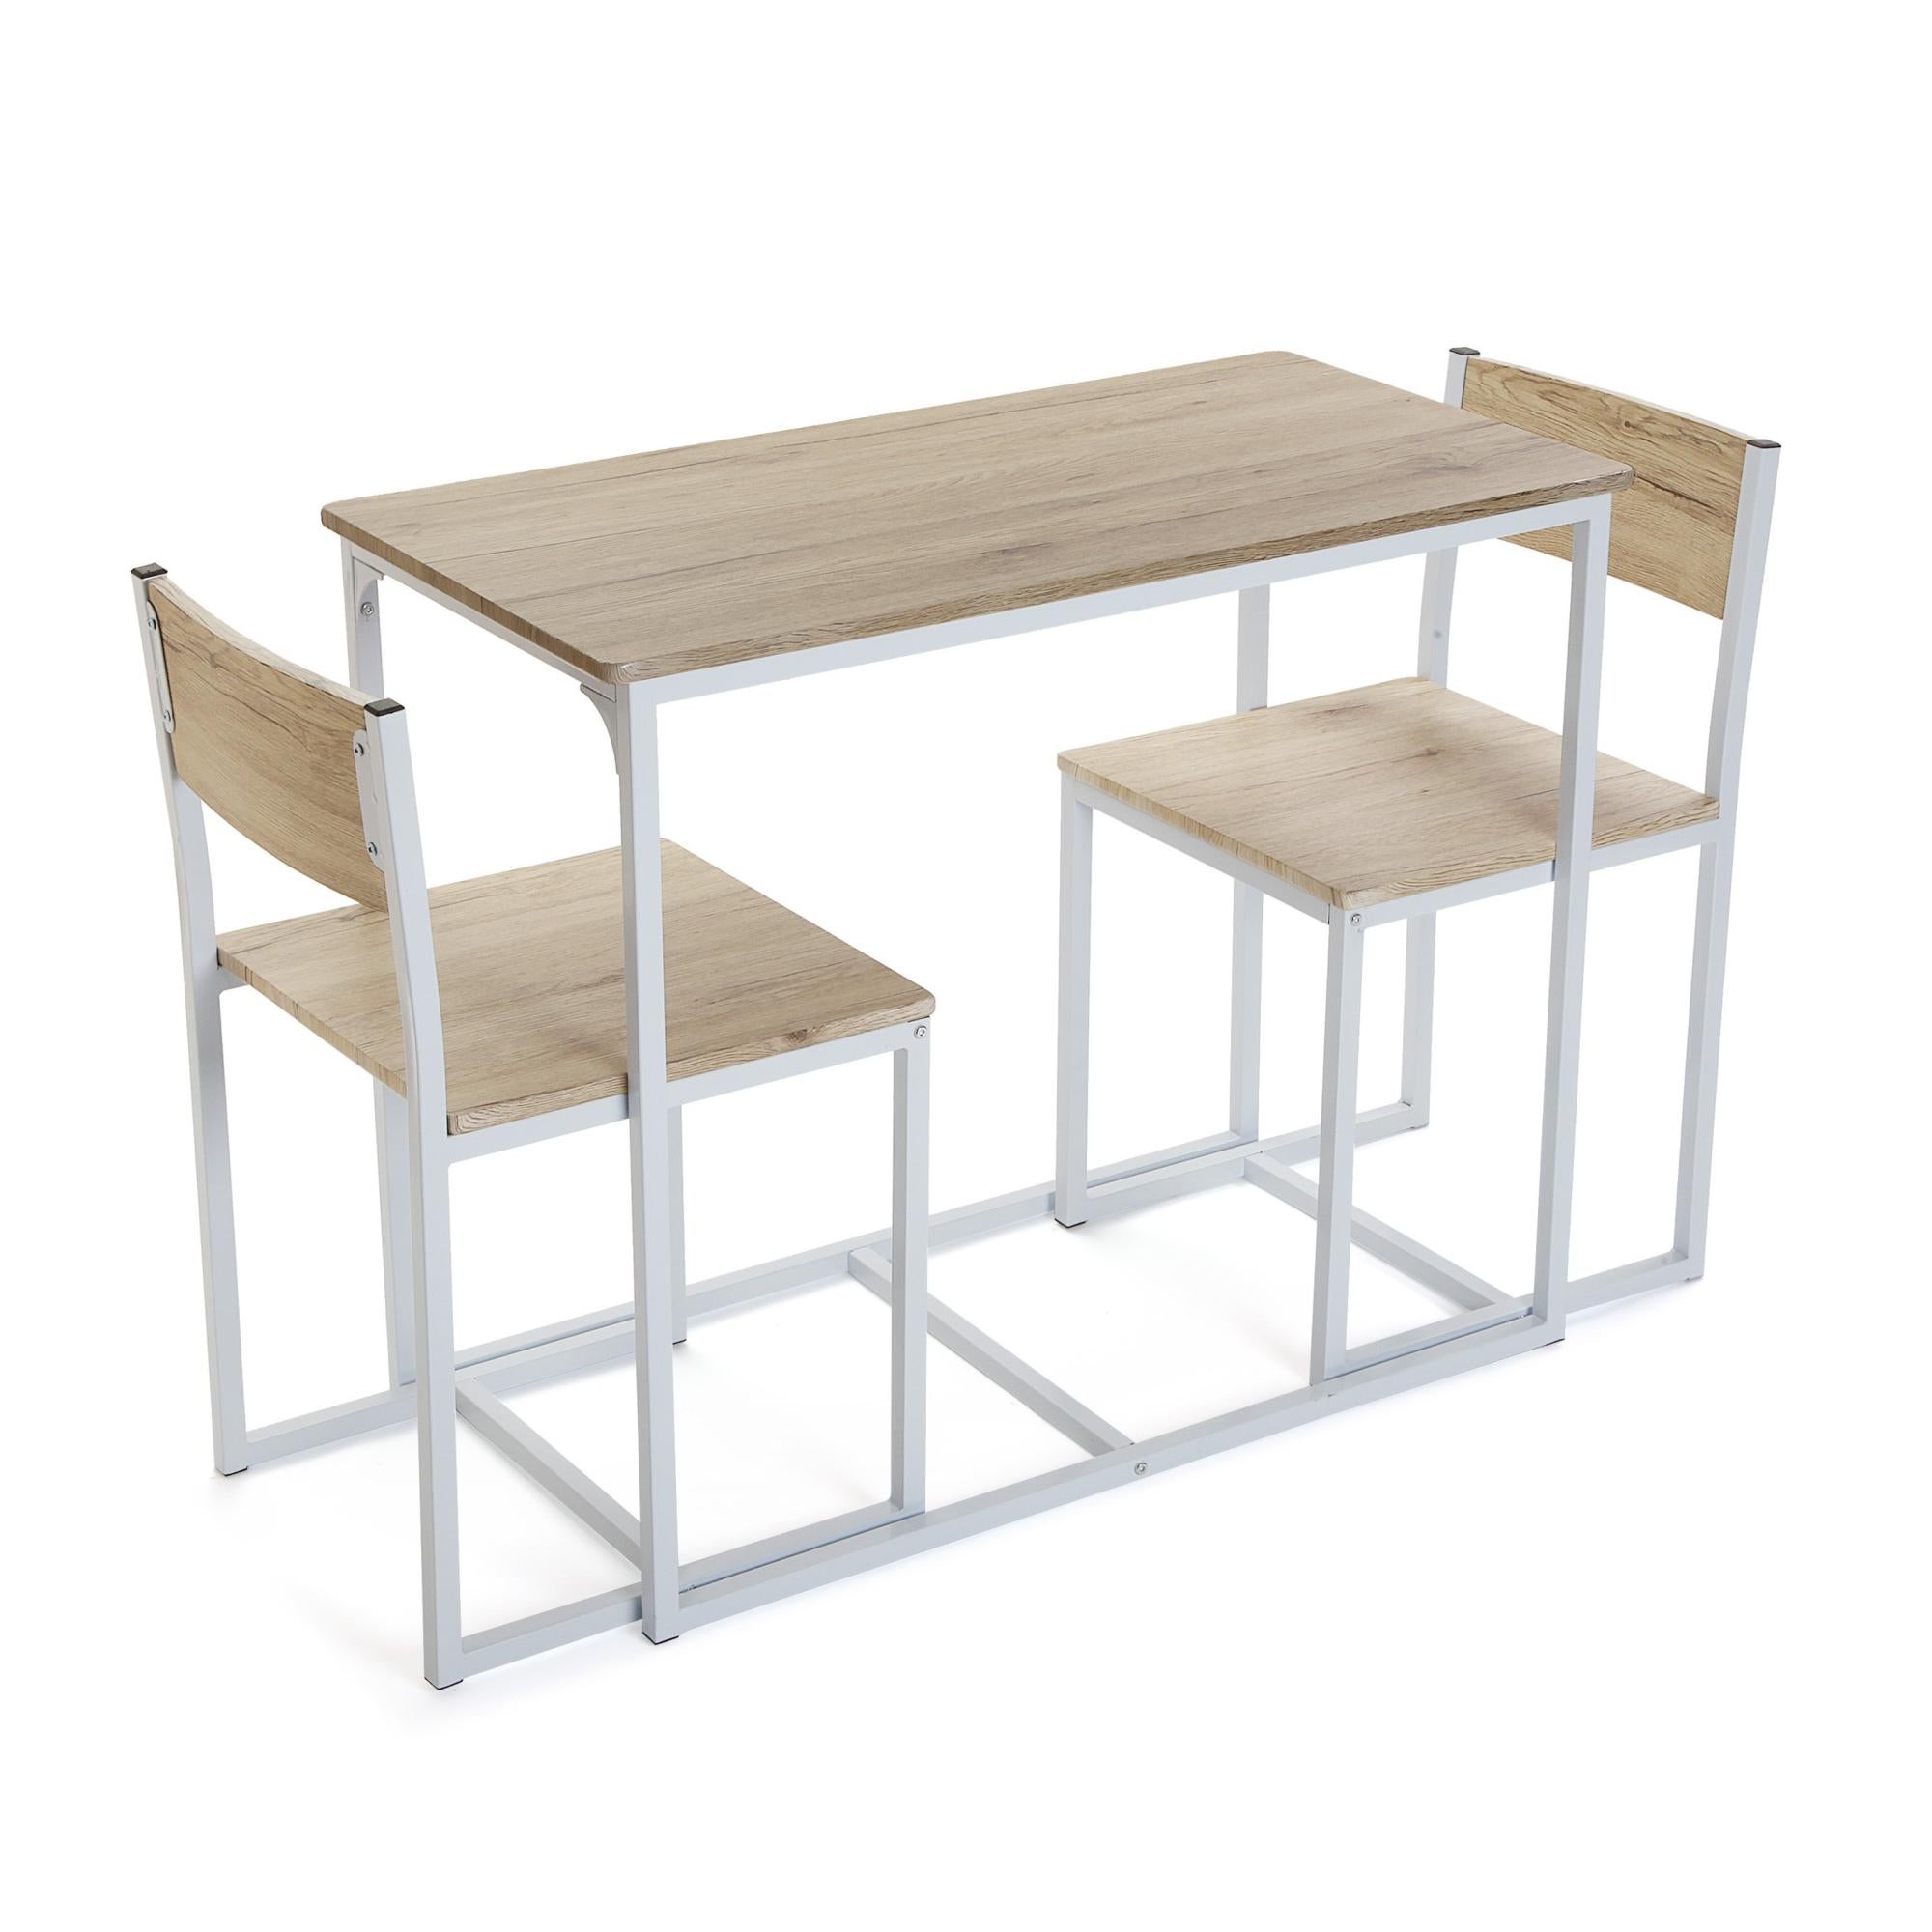 Conjunto de mesa de 75x45x89 cm y 2 sillas versa en madera mdf beige/blanco